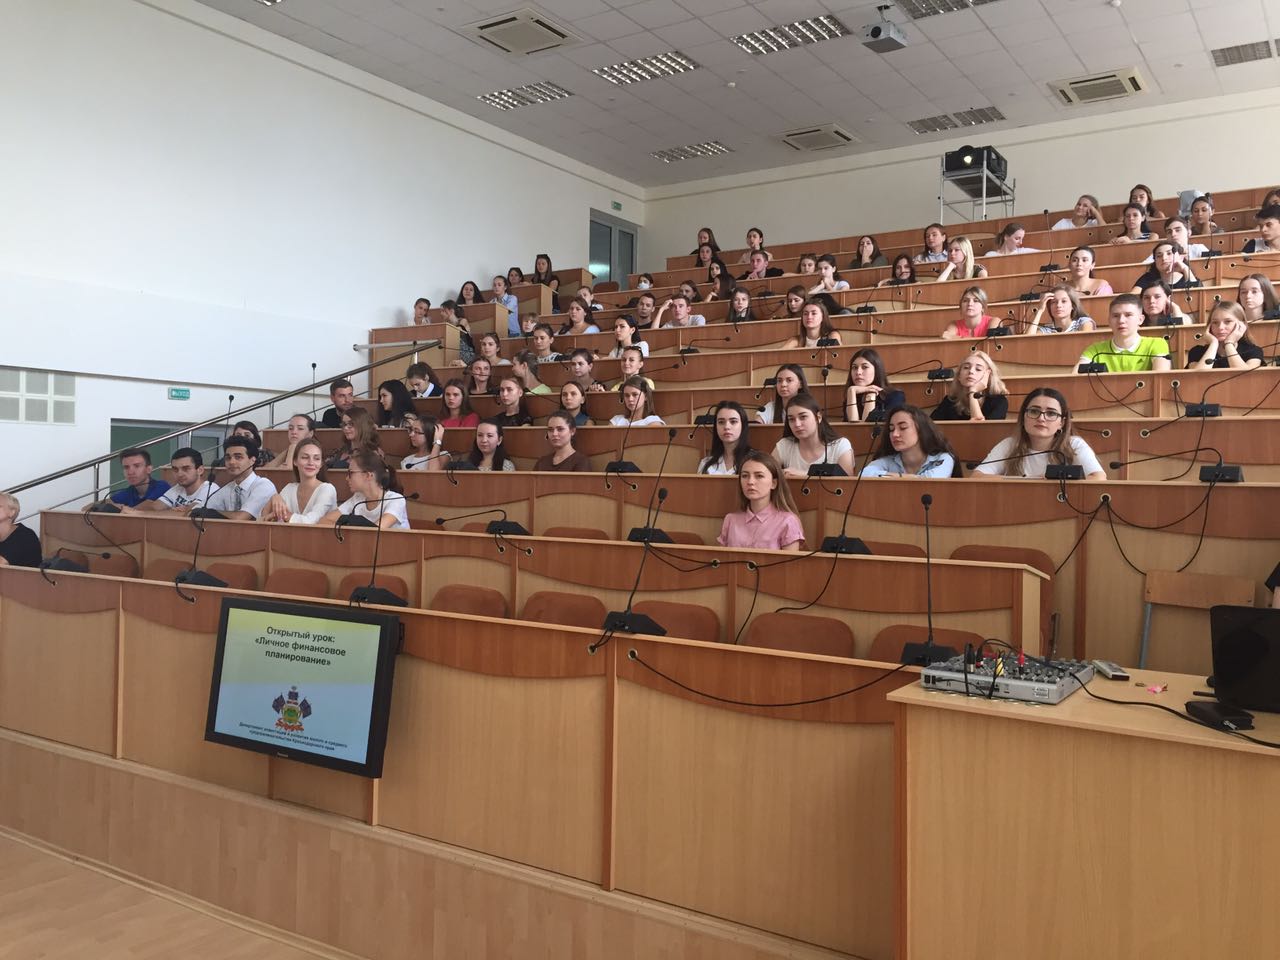 Открытая лекция "Личное финансовое планирование" прошла в КубГУ